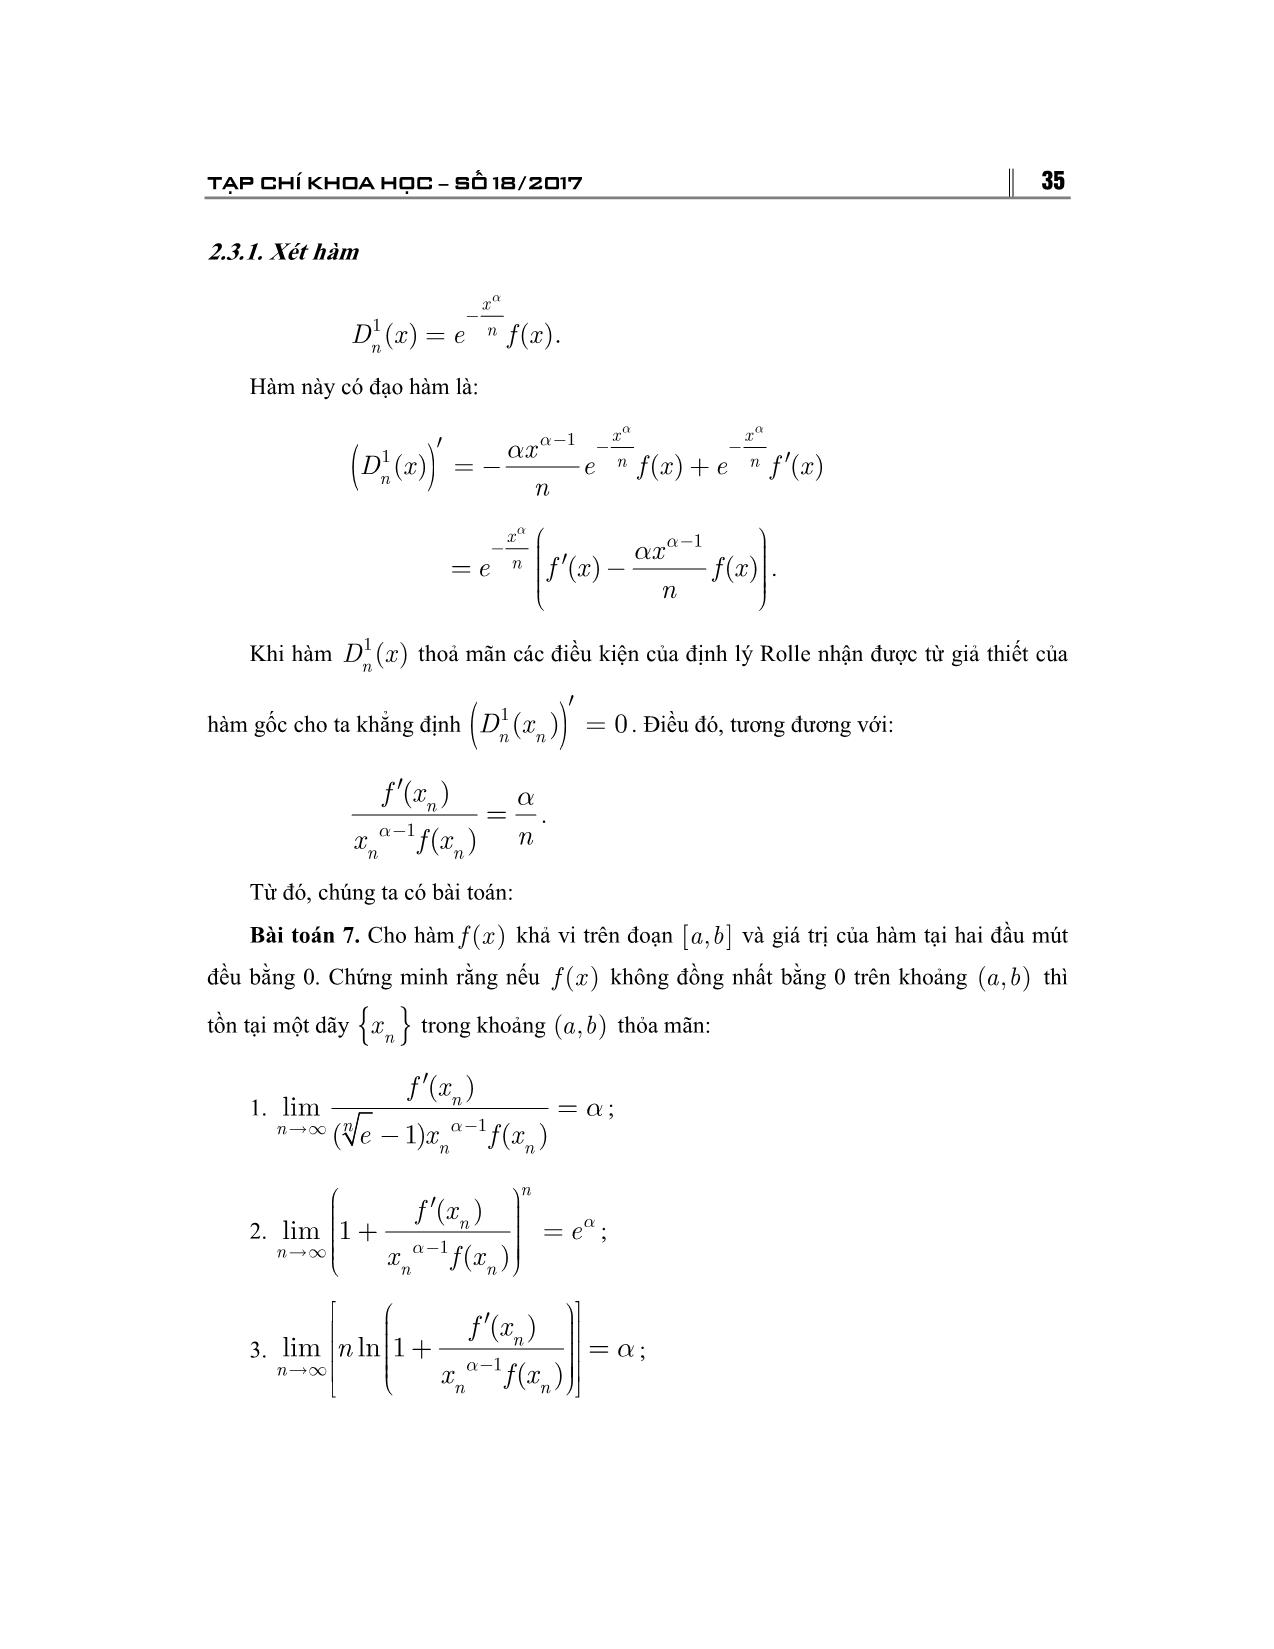 Ứng dụng của định giá trị trung bình trong một số bài toán về giới hạn dãy số trang 5